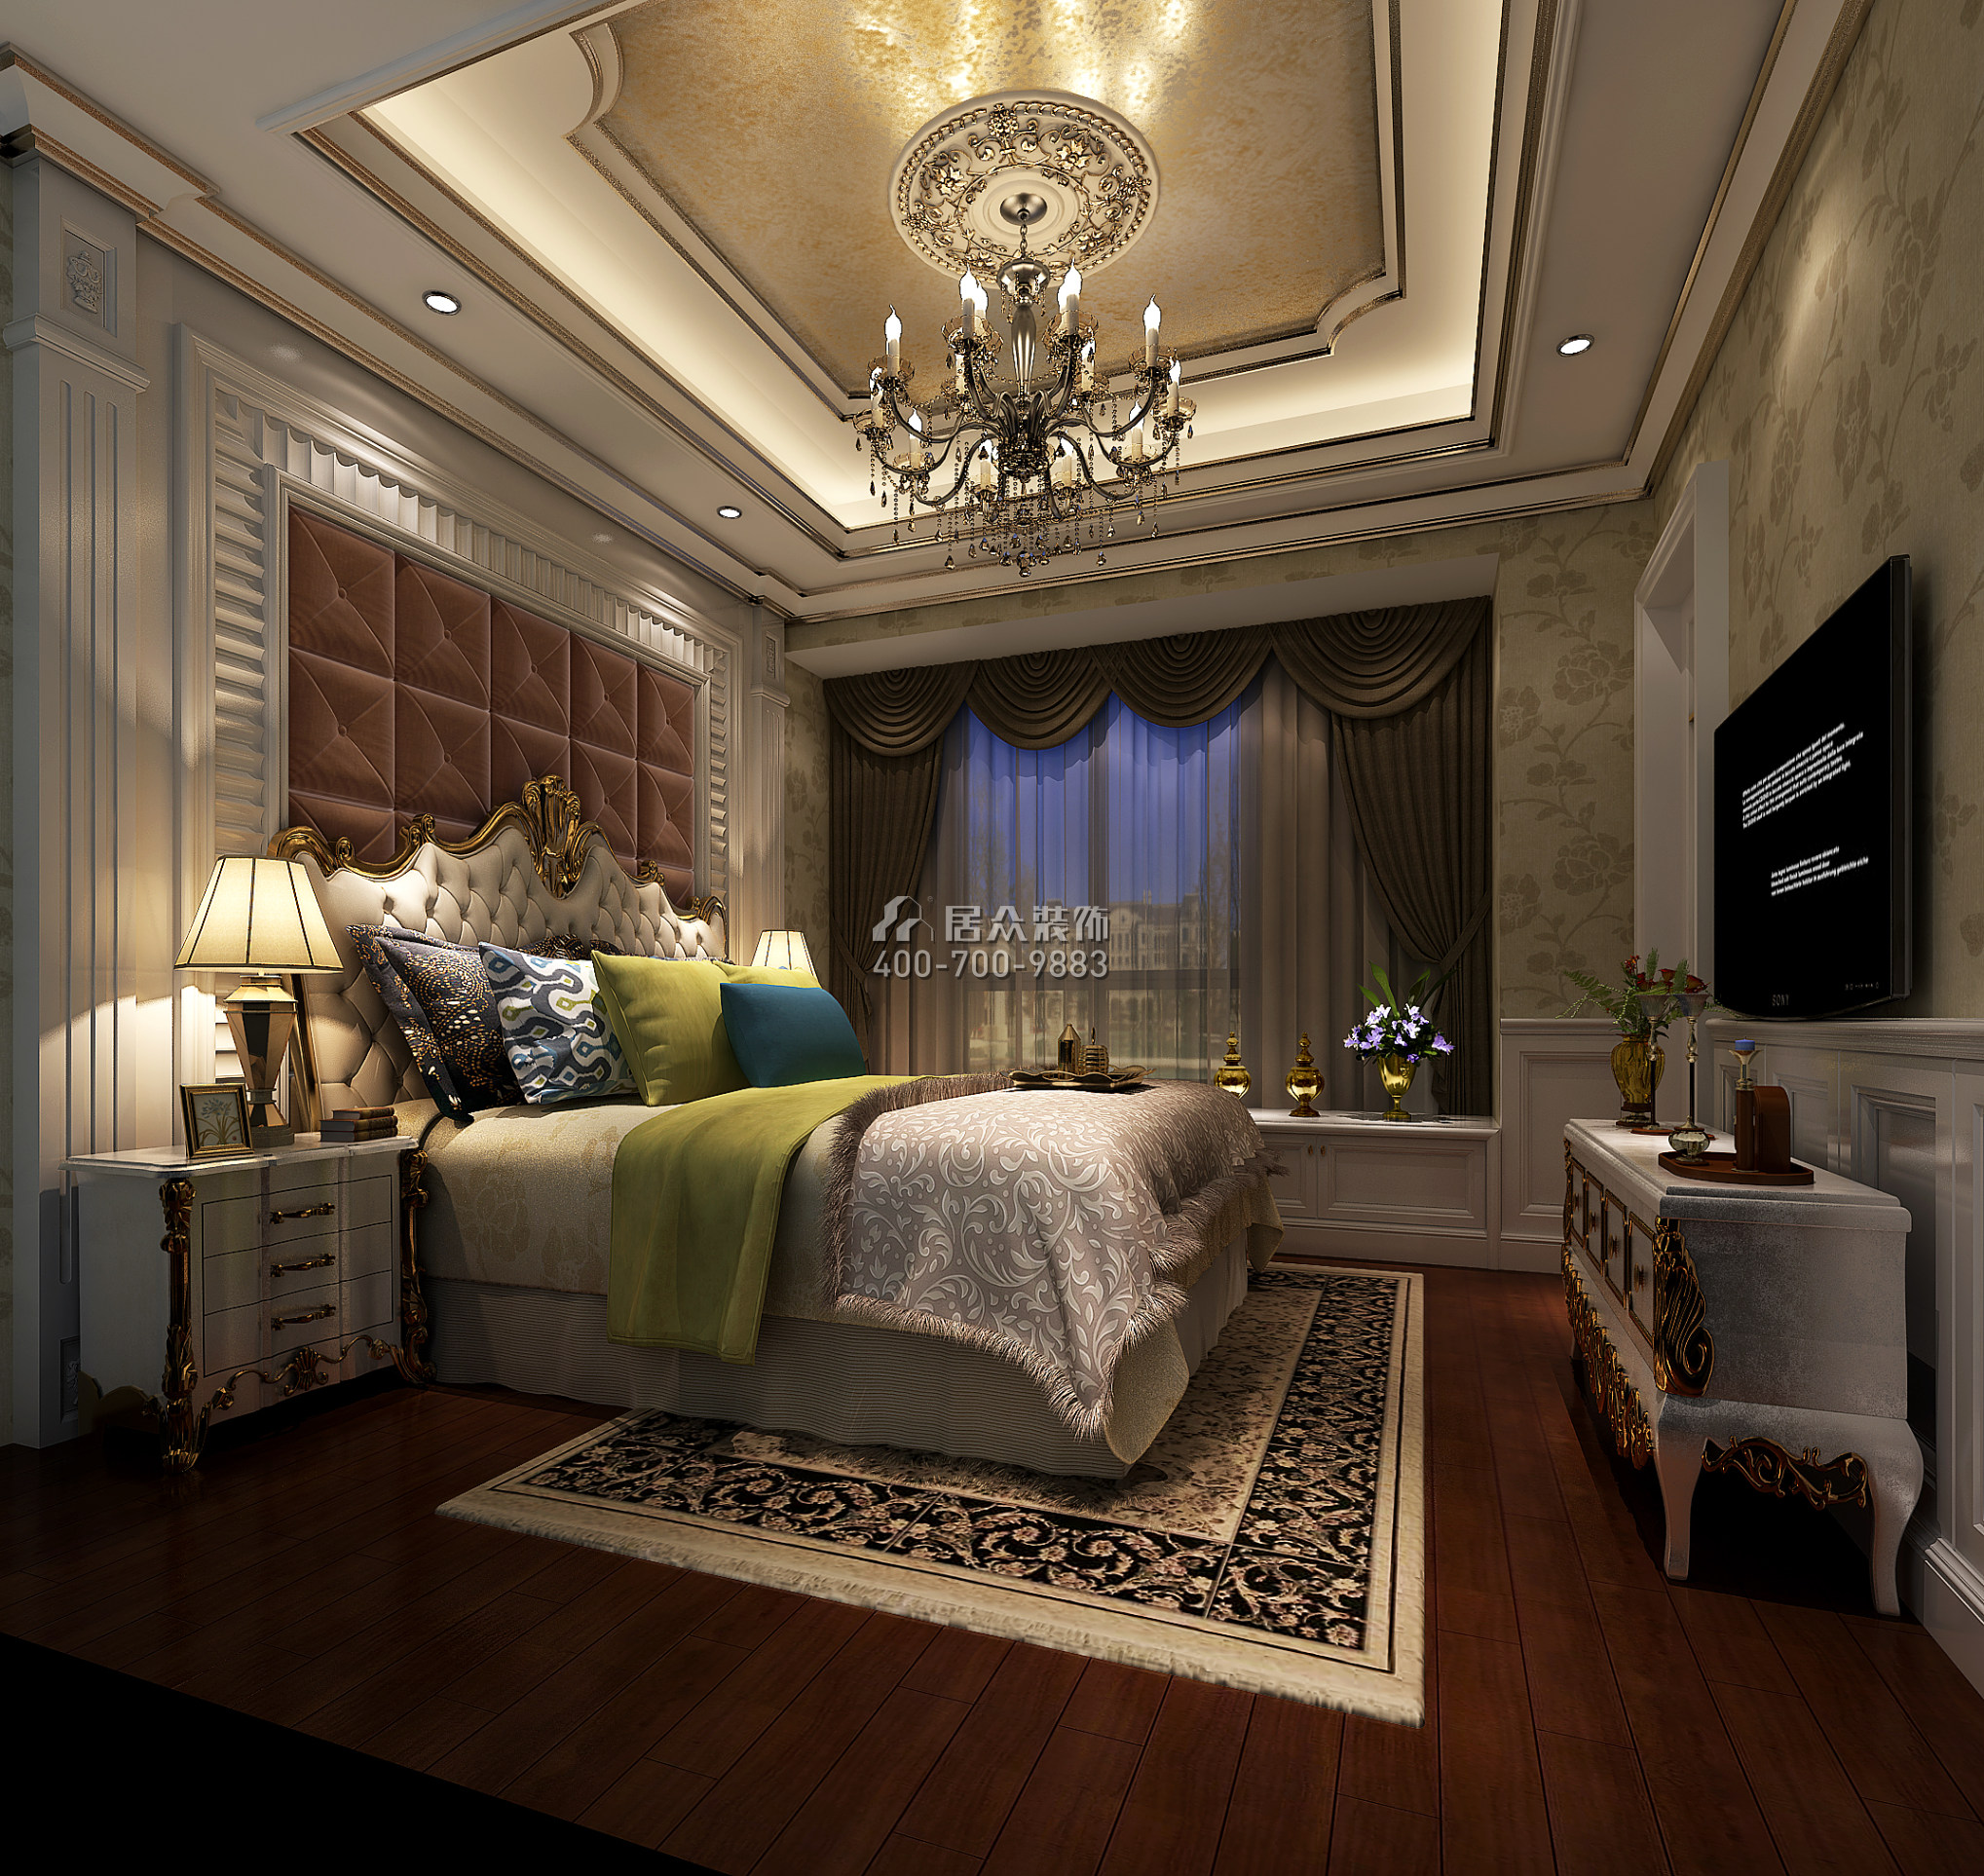 雅居樂雍華廷260平方米歐式風格別墅戶型臥室裝修效果圖